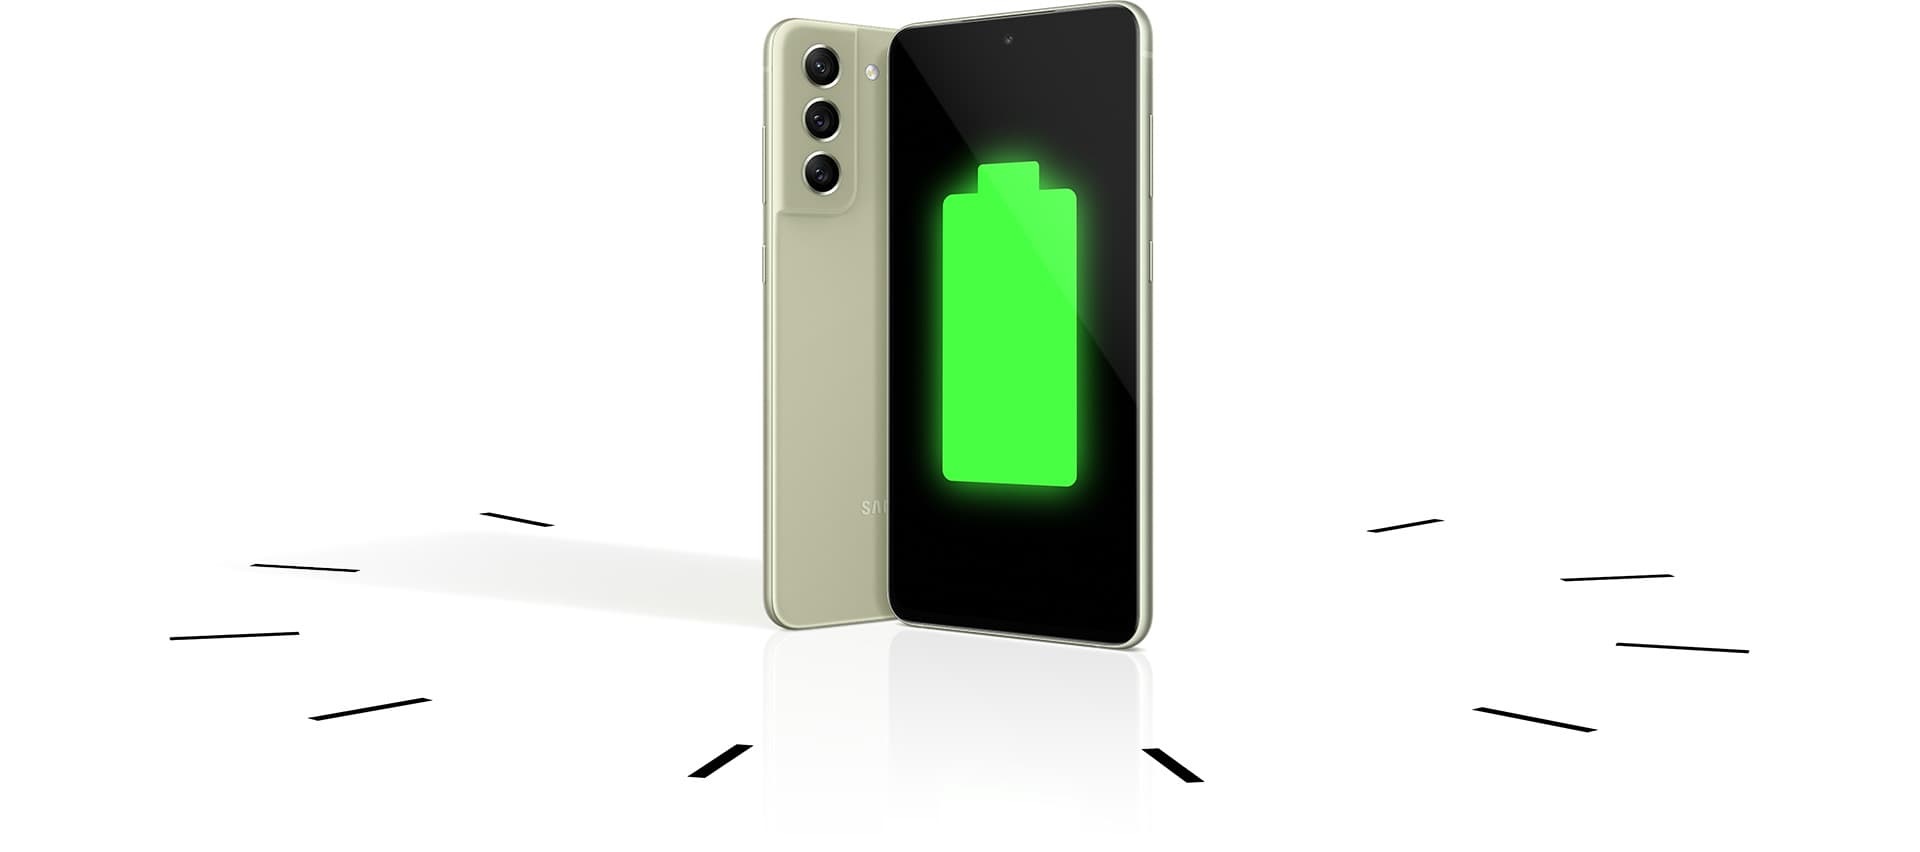 Dos teléfonos Galaxy S21 FE 5G vistos en posición vertical, uno desde atrás y el otro desde el frente con un icono de batería completa en la pantalla. Los teléfonos se encuentran dentro de un reloj para demostrar que la batería es duradera.